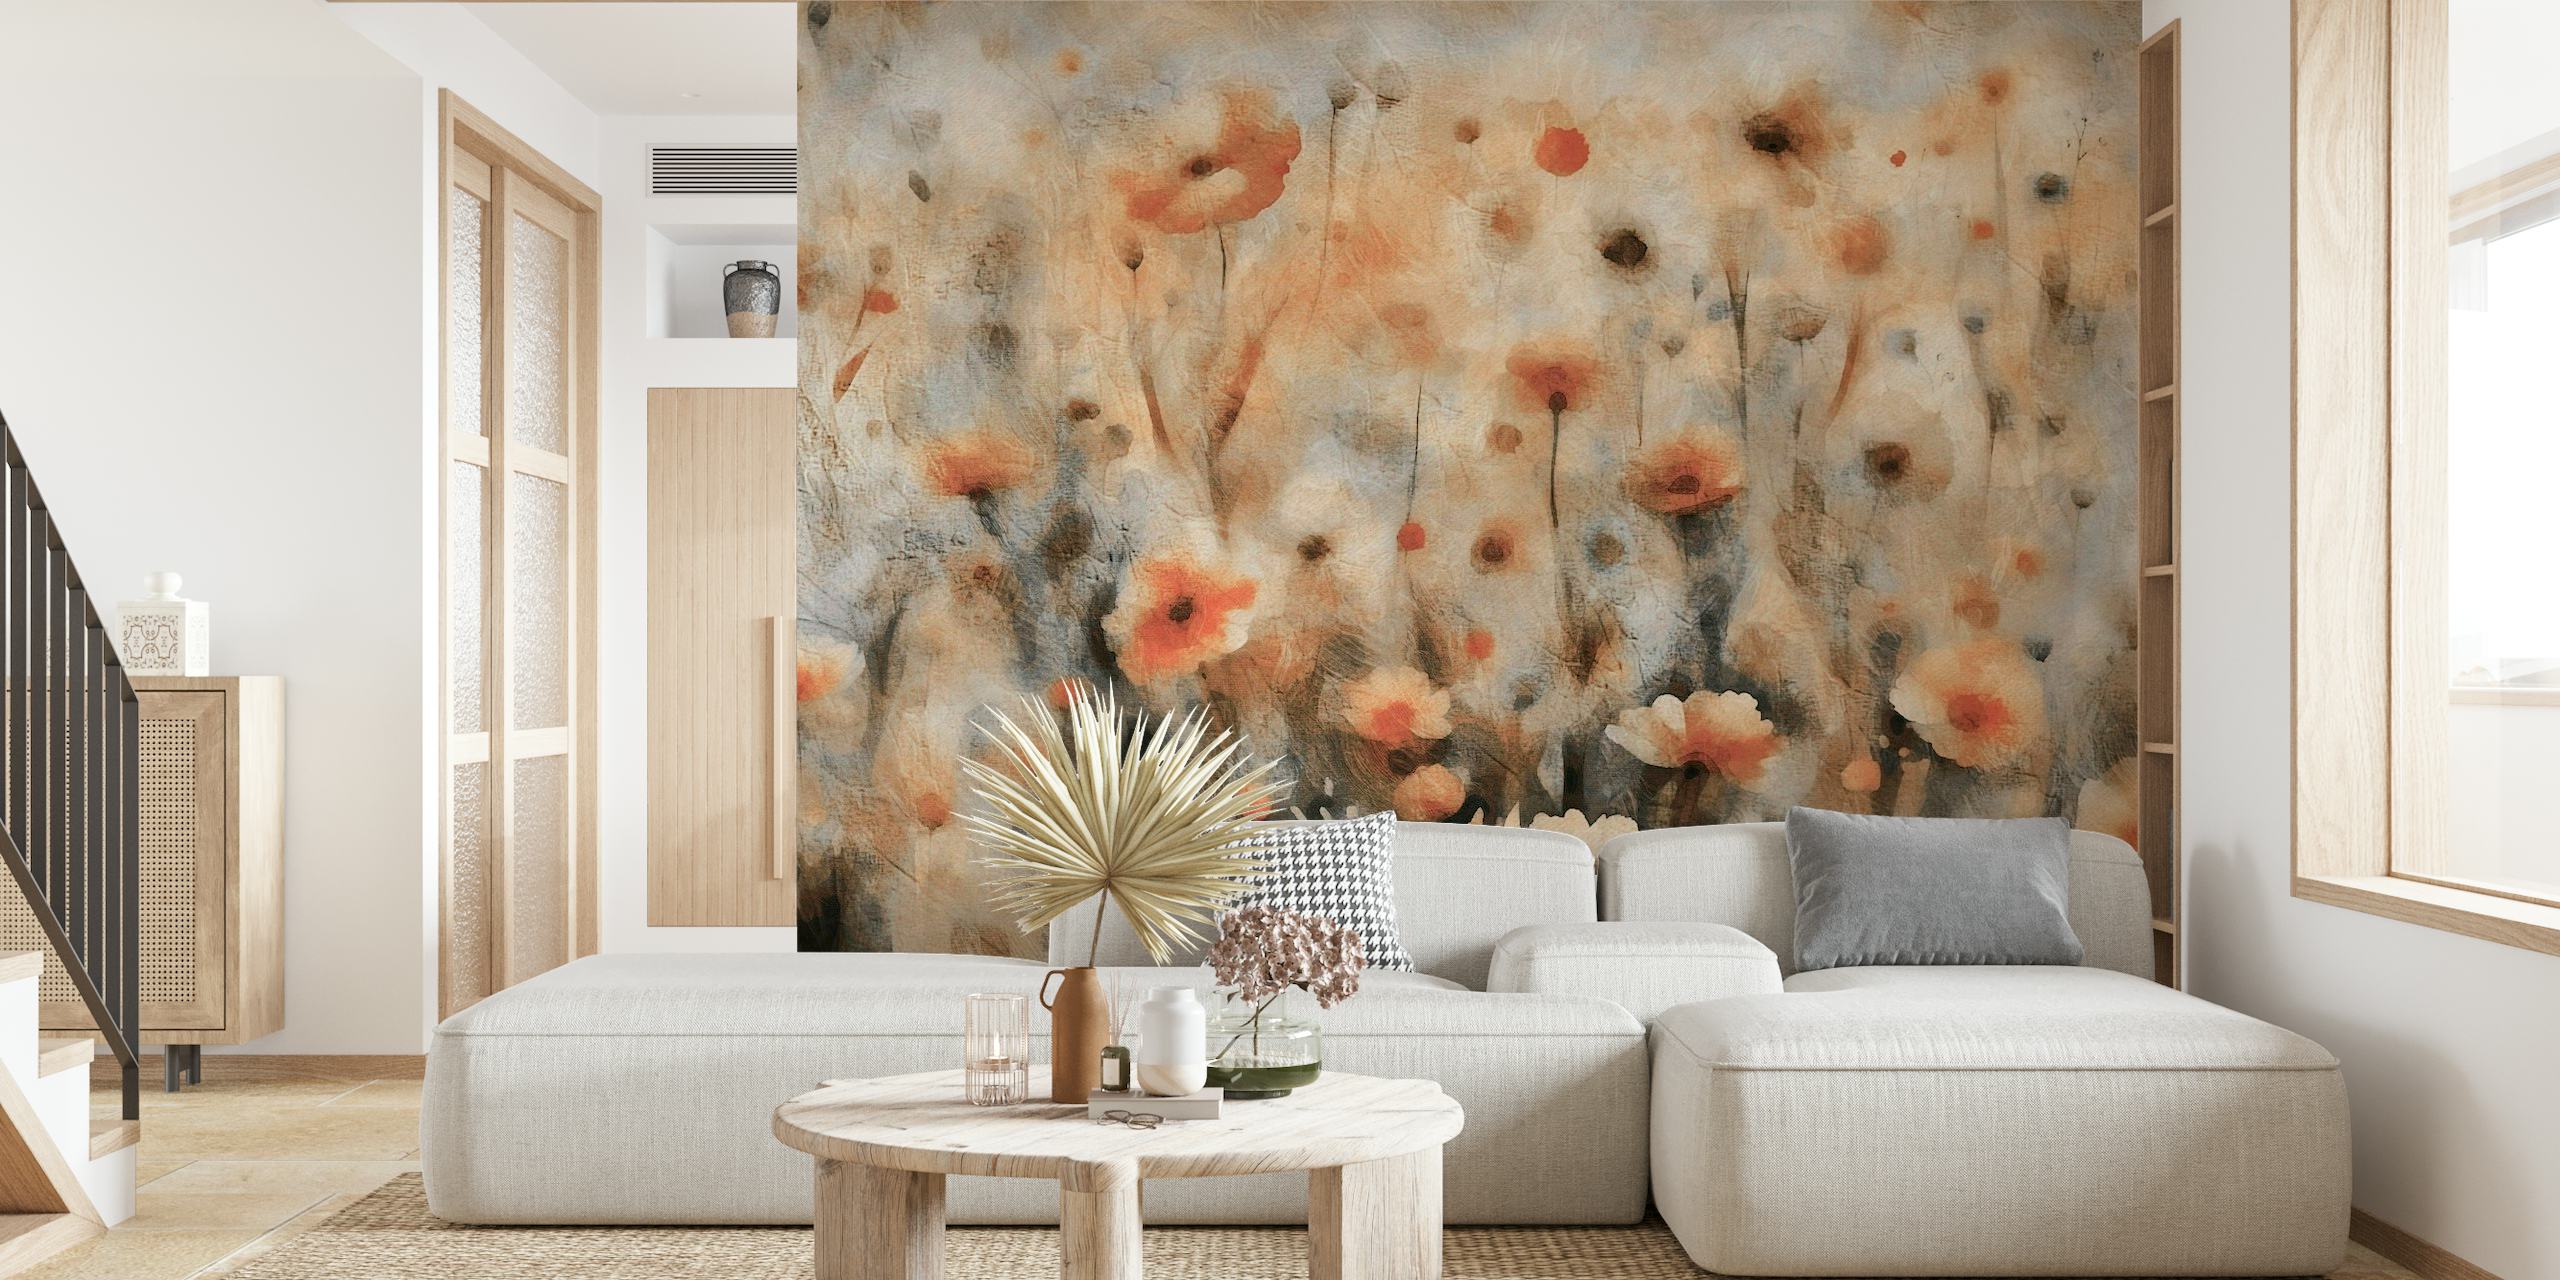 Zidna slika u starinskom stilu s ćudljivim poljskim cvijećem u izblijedjelim zemljanim tonovima